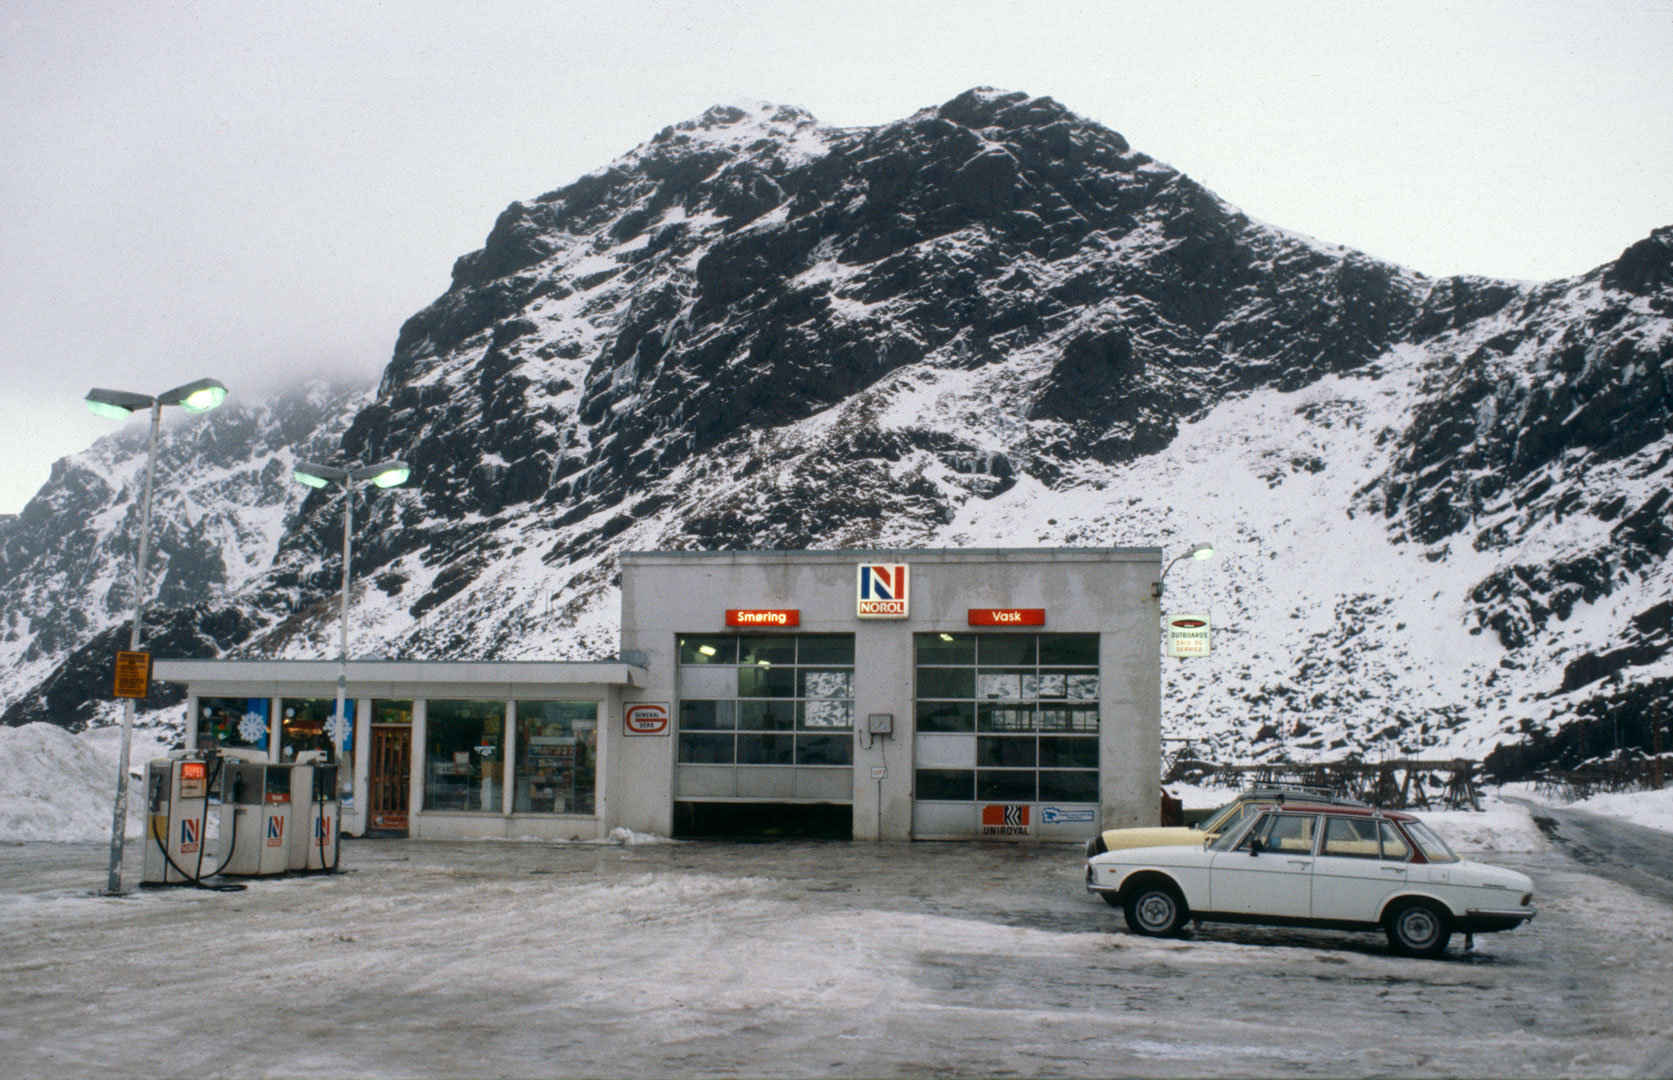 Det skulle ikke være noen tvil om den nasjonale tilhørigheten til Norol-stasjonene, som denne i Stamsund i Lofoten. Bildet er tatt i 1980.